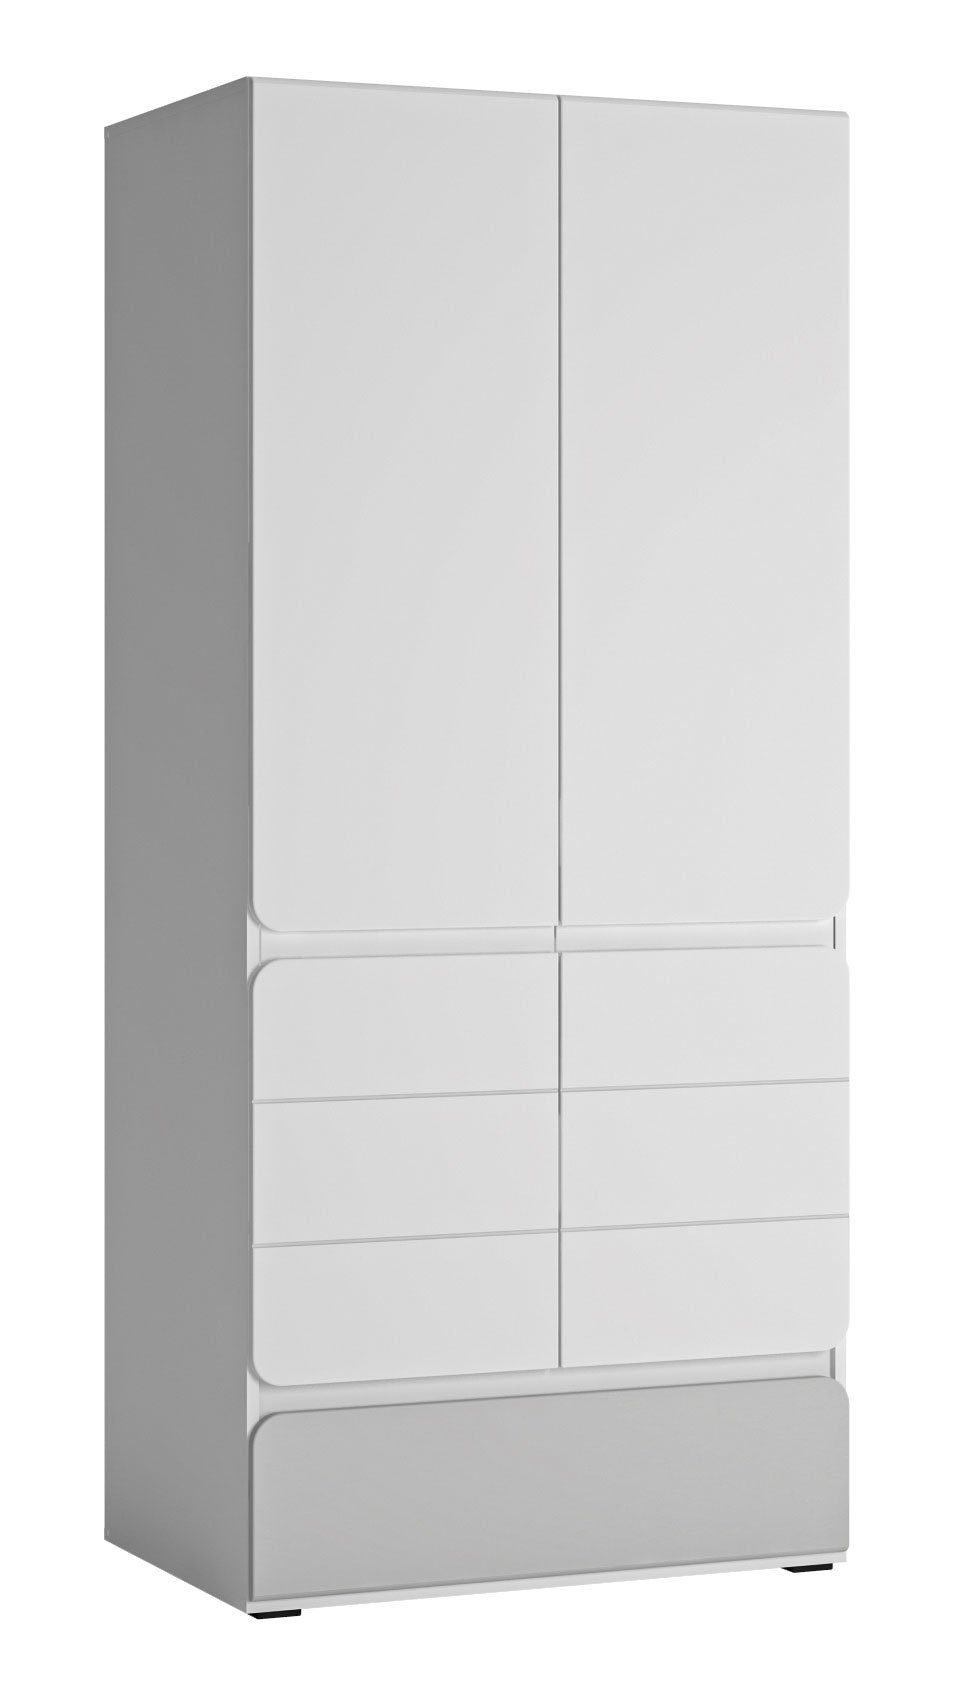 Feldmann-Wohnen Kleiderschrank Albi (Albi, Kleiderschrank) 84x59x193cm weiß grau Hochglanz | Kleiderschränke